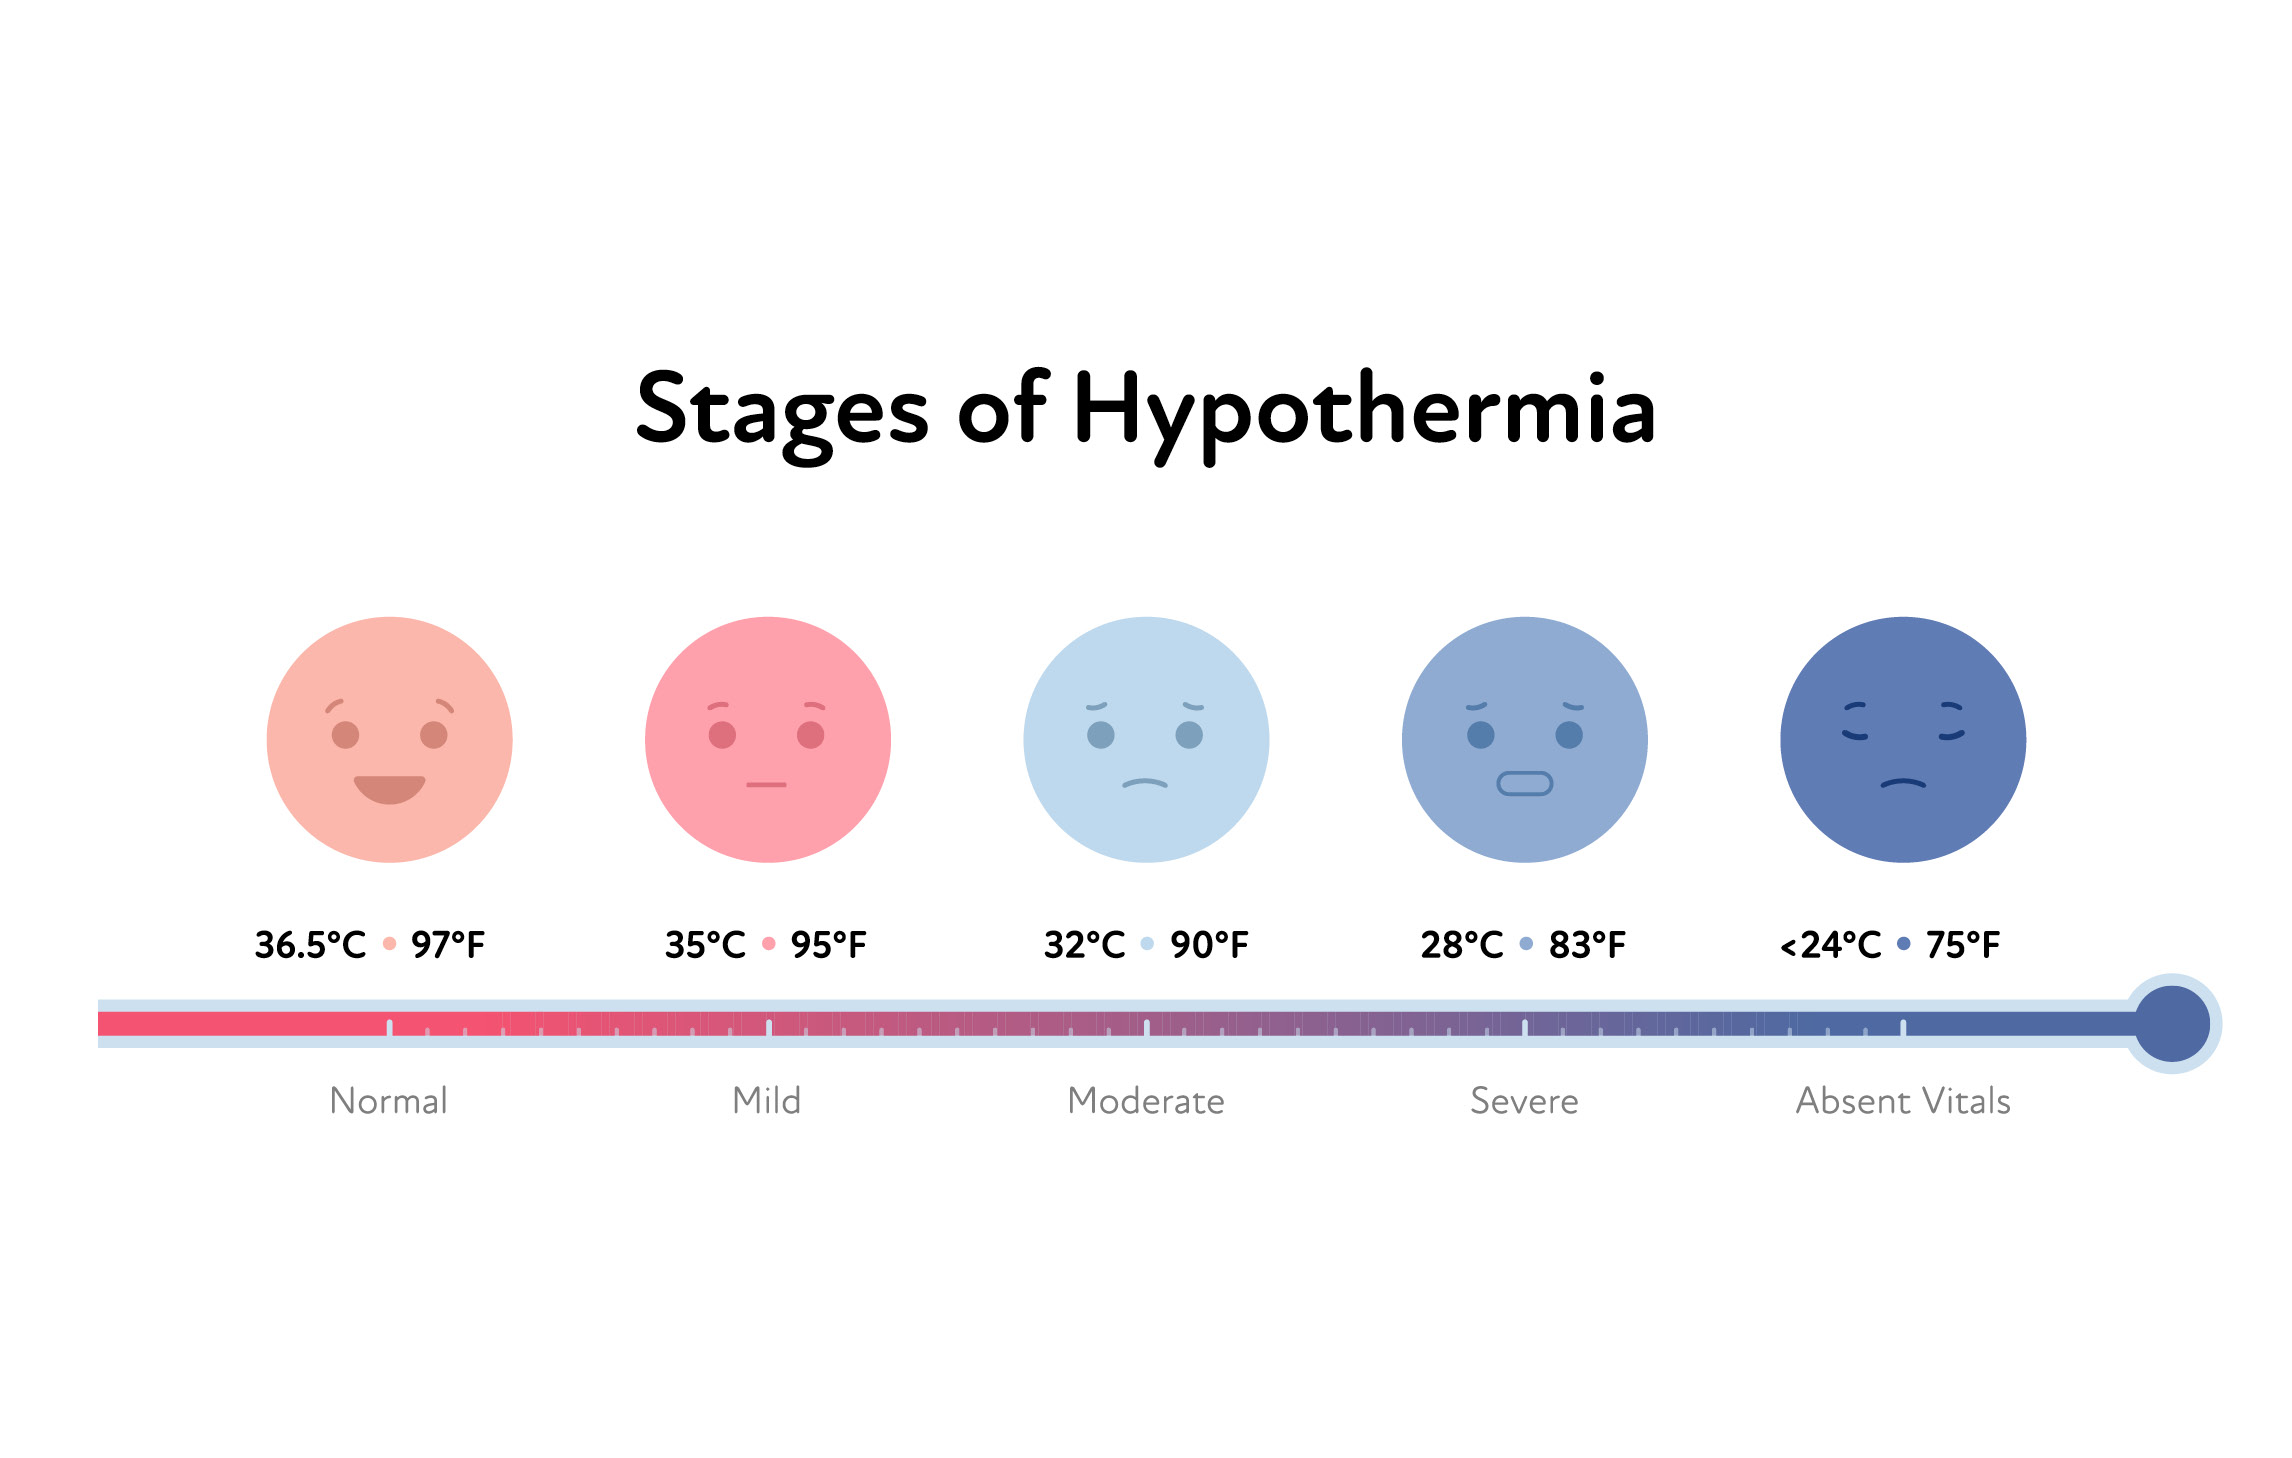 Die verschiedenen Stadien einer Hypothermie und den jeweiligen Temperaturen